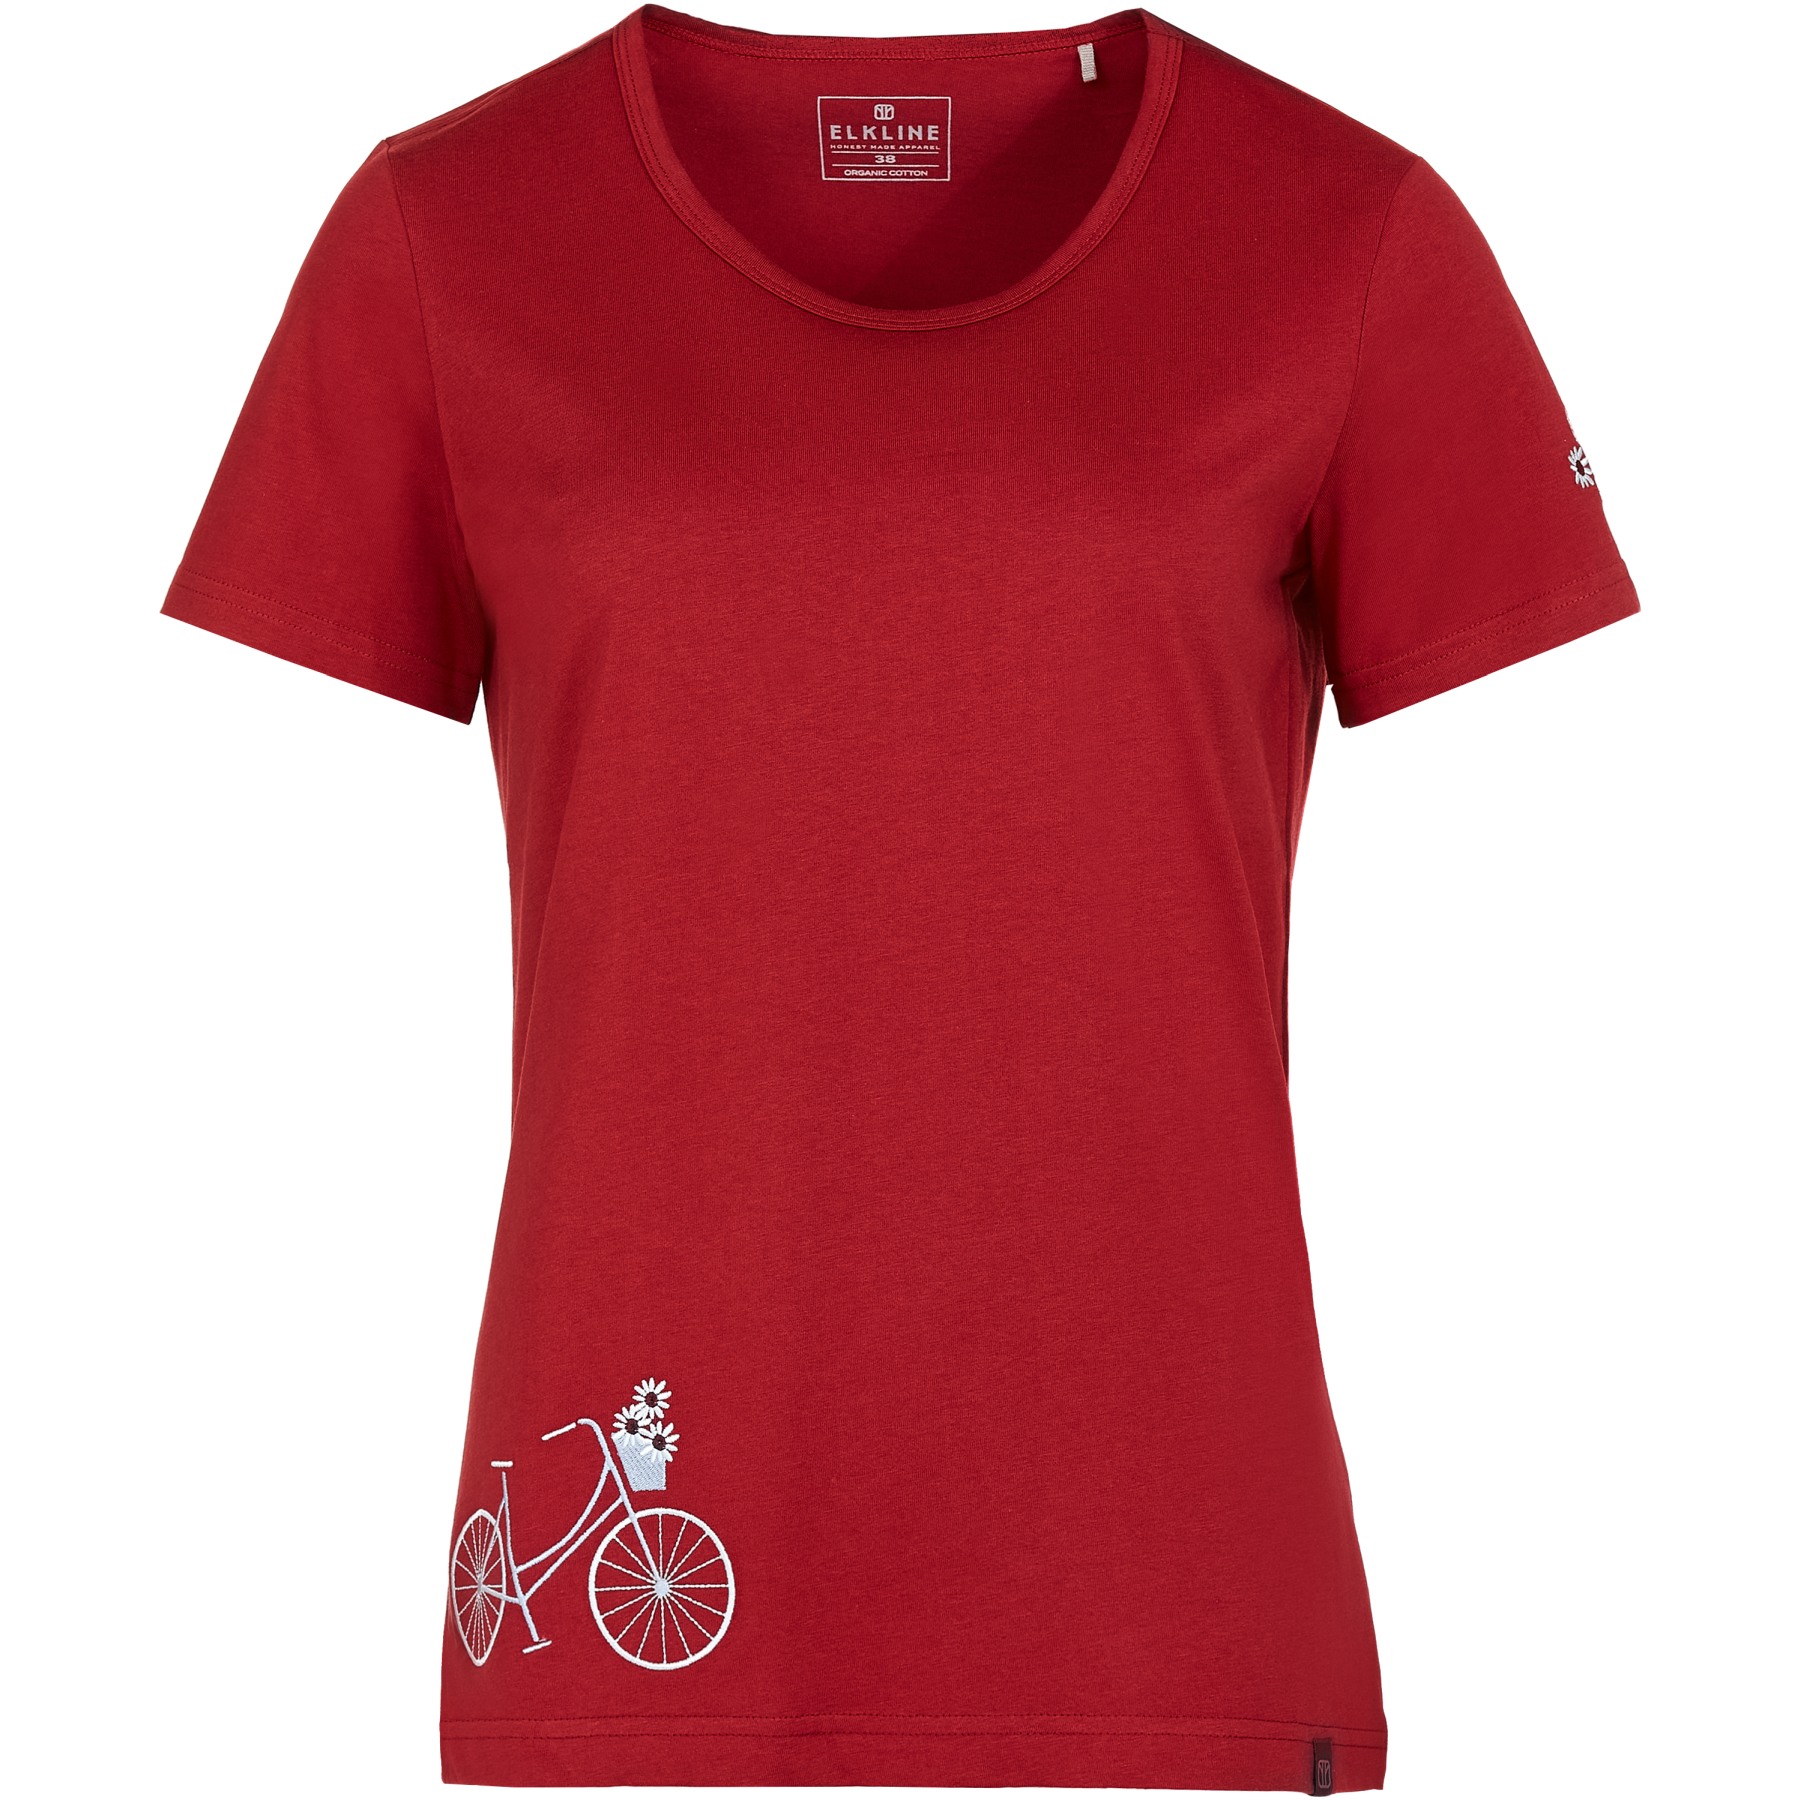 Produktbild von Elkline FLOWER BIKE Damen T-Shirt - oxbloodred